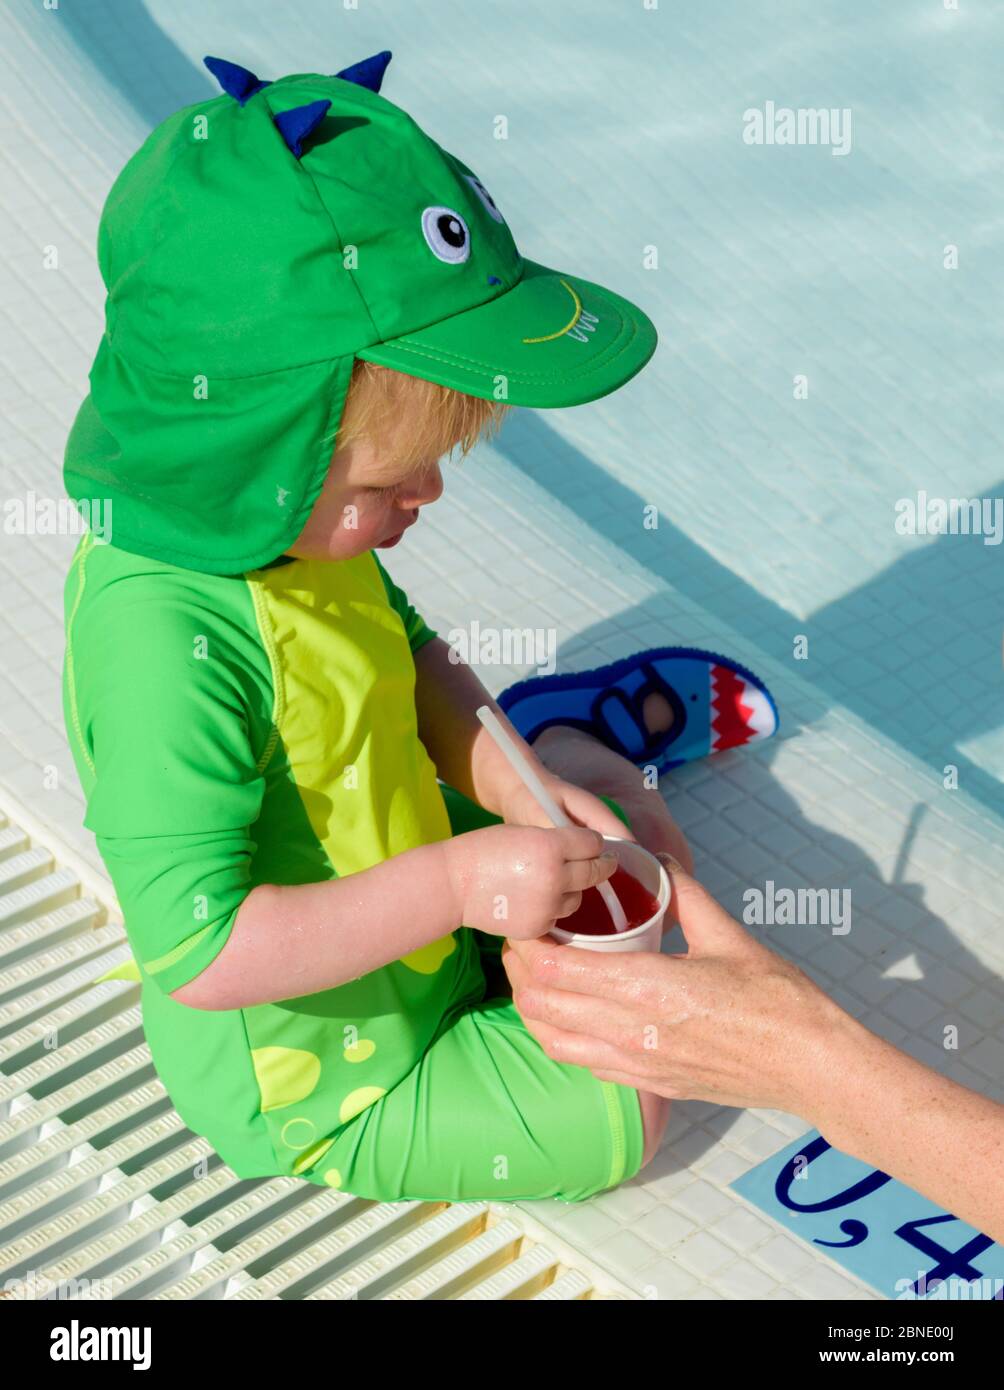 Ein kleines Kind wird ein kaltes Getränk gegeben, um während des Spielens im Pool an einem heißen Sommertag hydratisiert zu bleiben Stockfoto